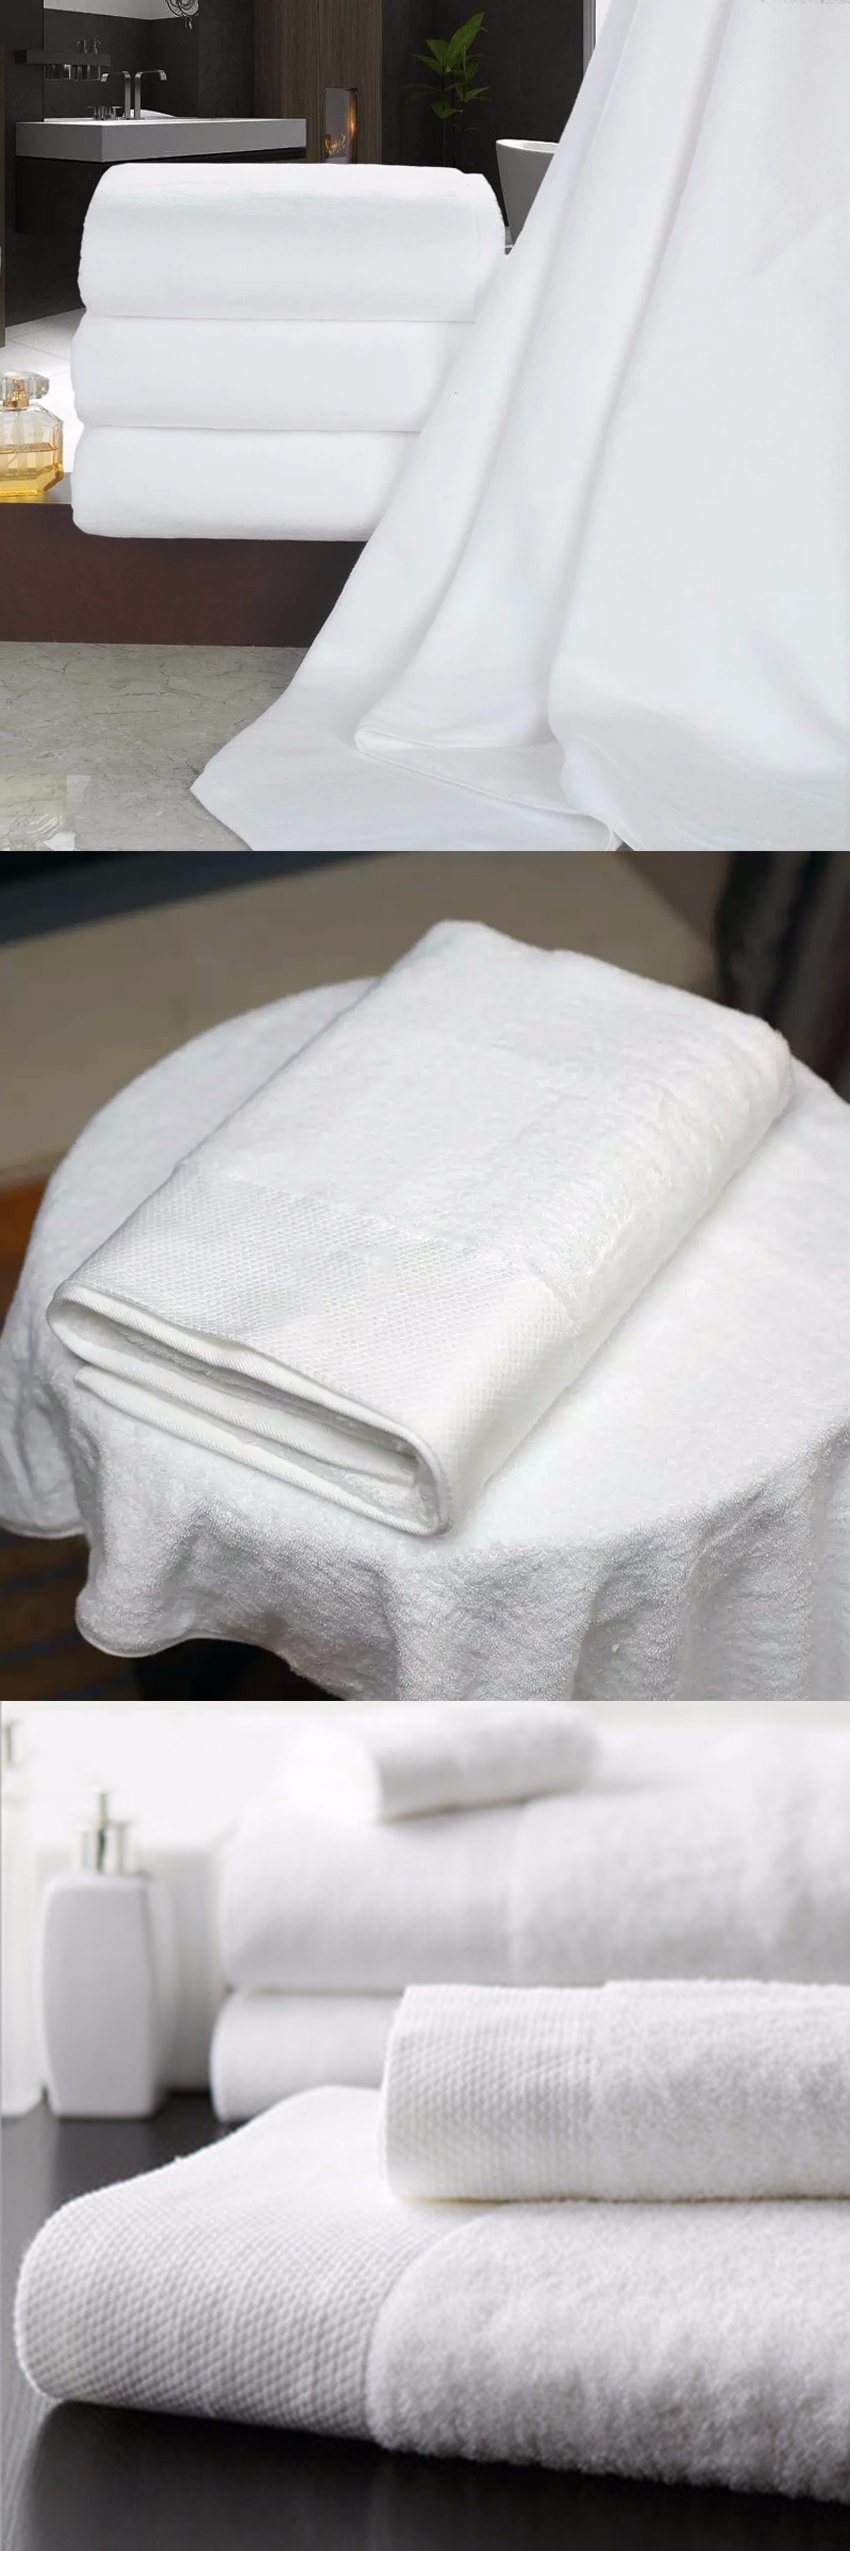 China Supplier Wholesale 500g Cotton Plain Hotel Bath Towel (JRD029)